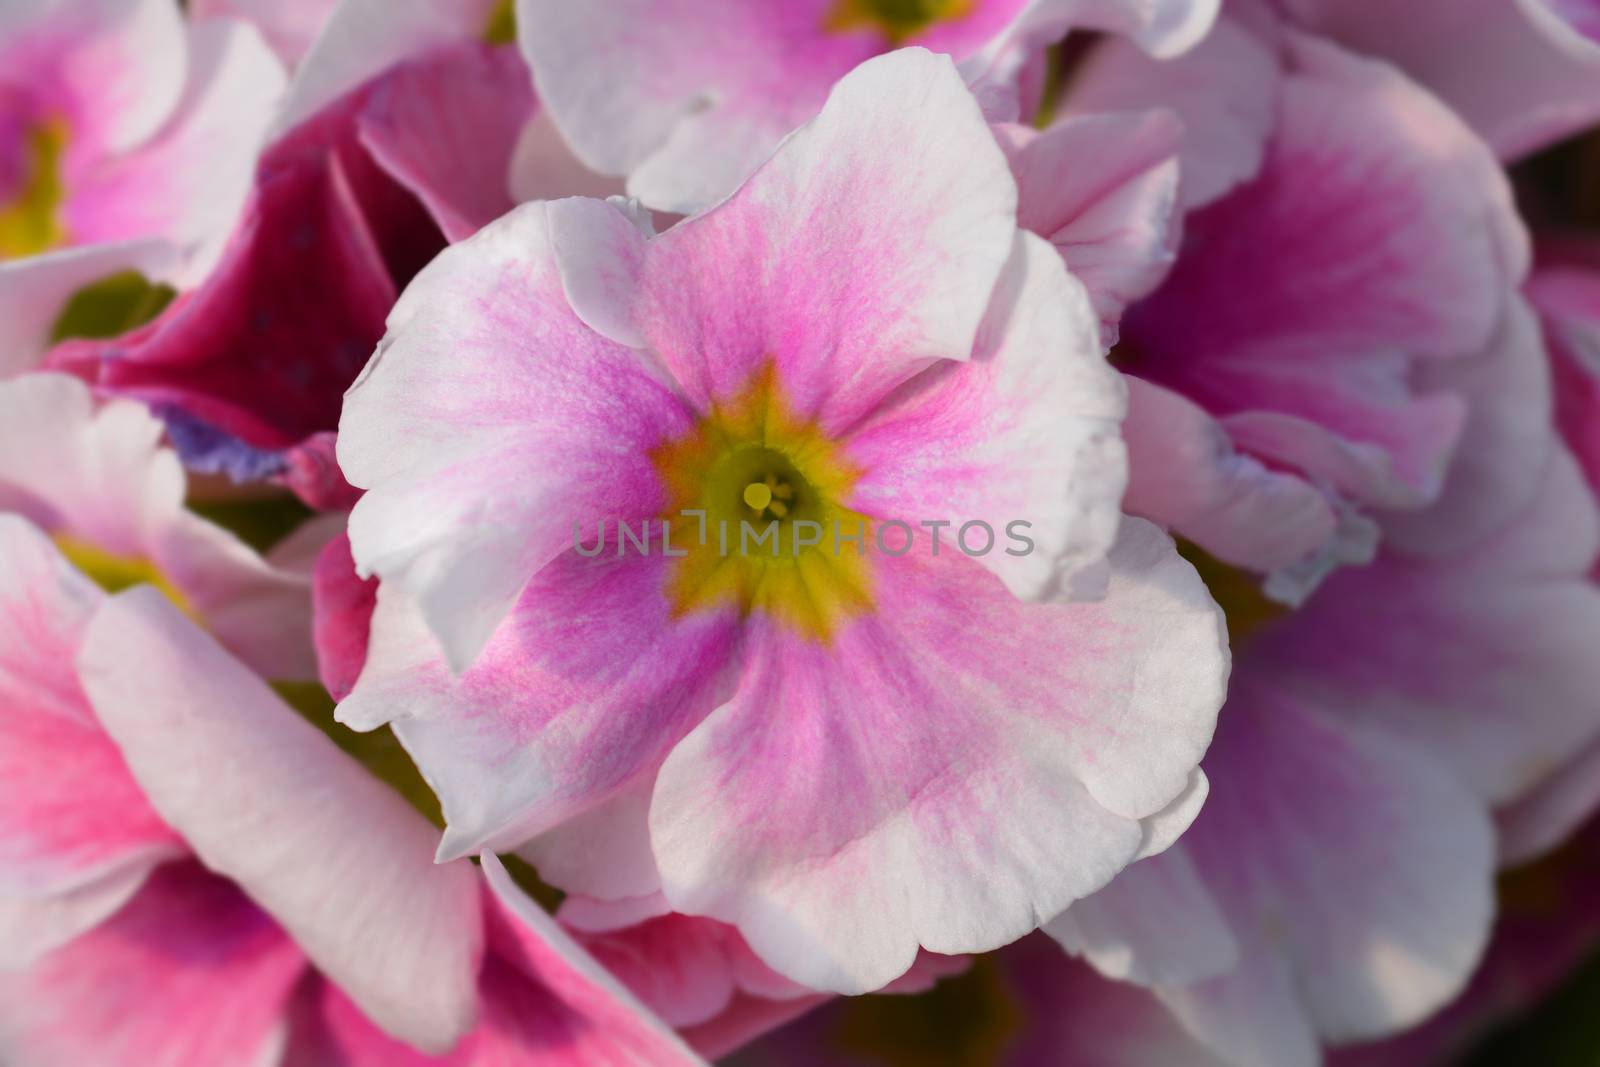 White and pink Poison primrose - Latin name - Primula obconica